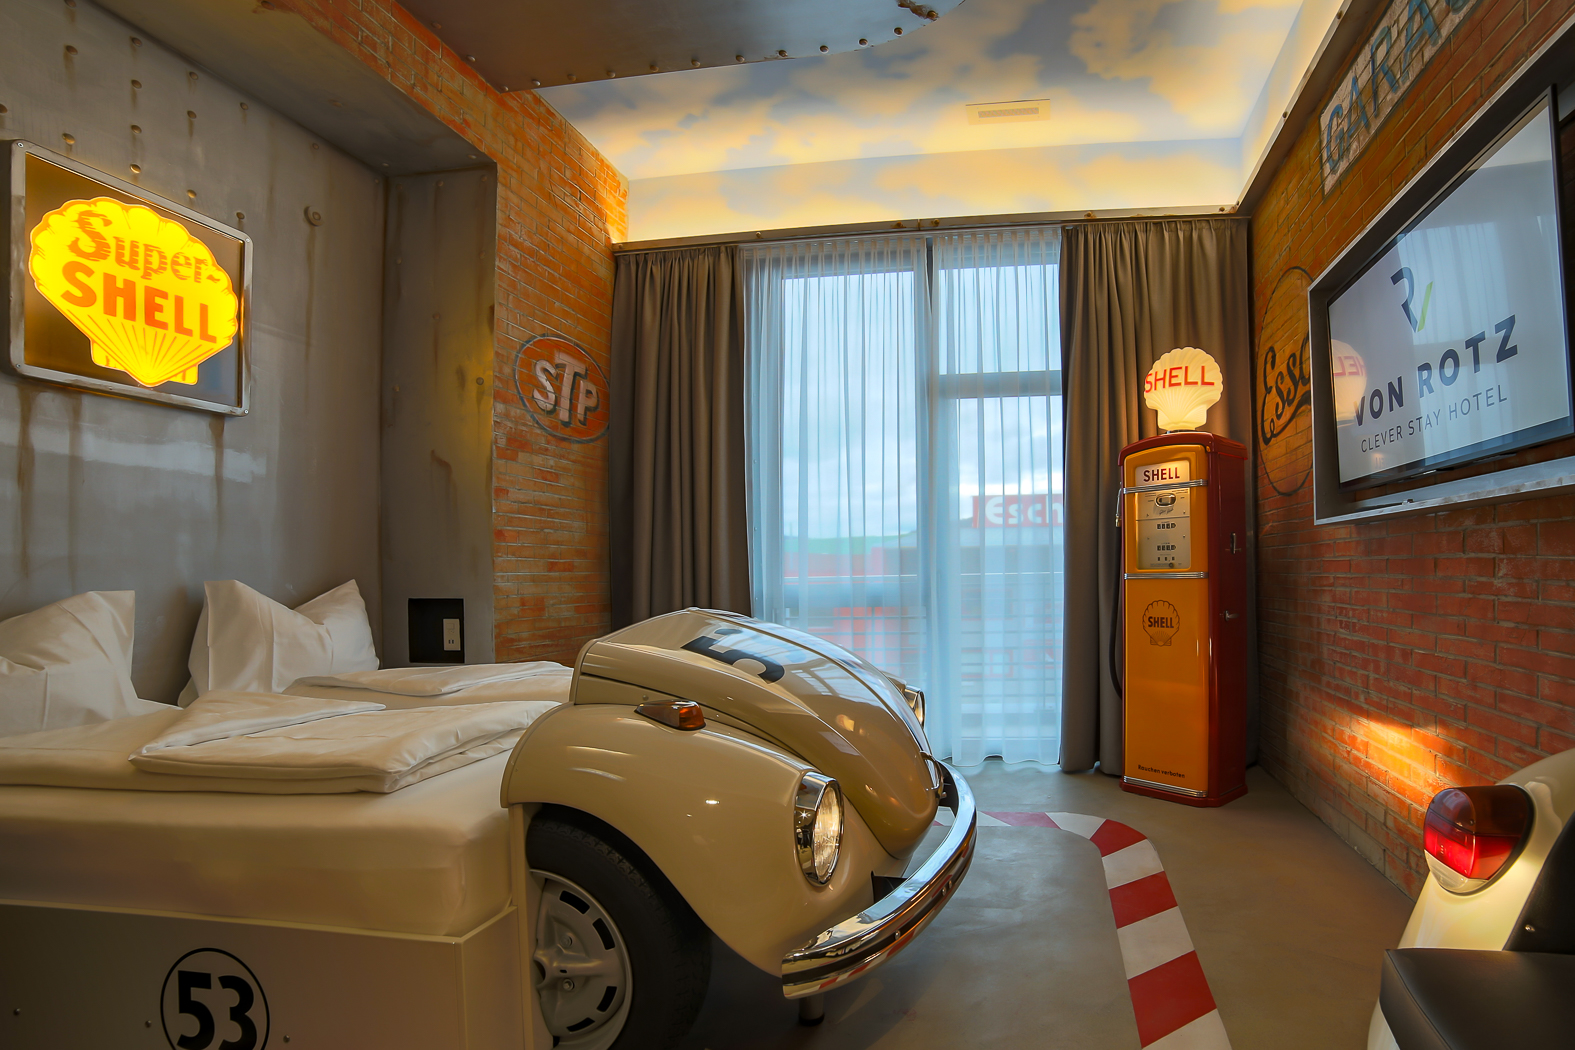 Zimmer, Hotel von Rotz in Wil (Kanton St. Gallen).
